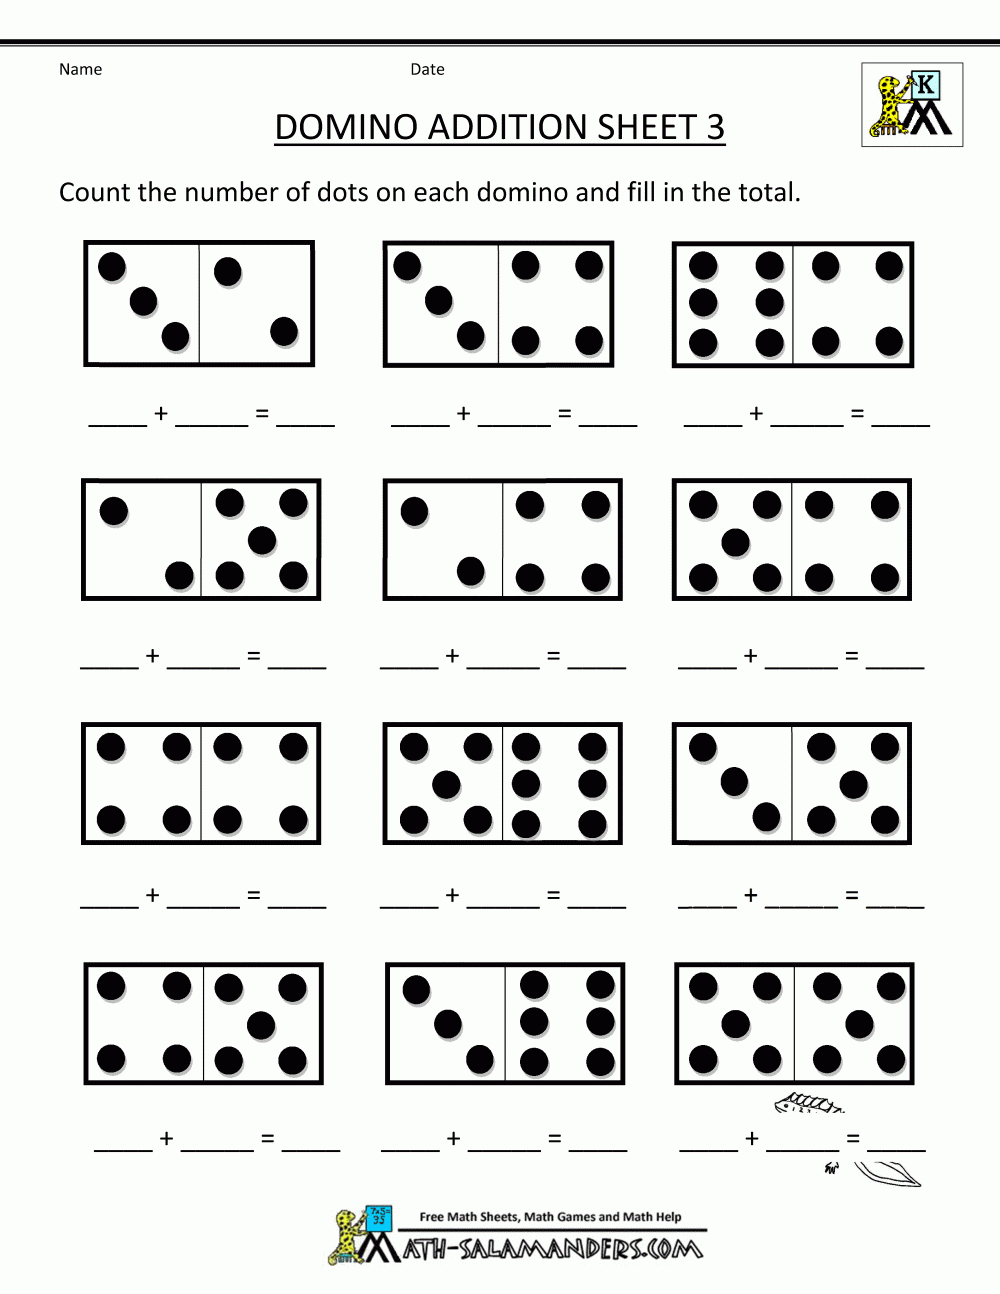 Printable Kindergarten Math Worksheets Domino Addition 3 - Free Printable Math Addition Worksheets For Kindergarten